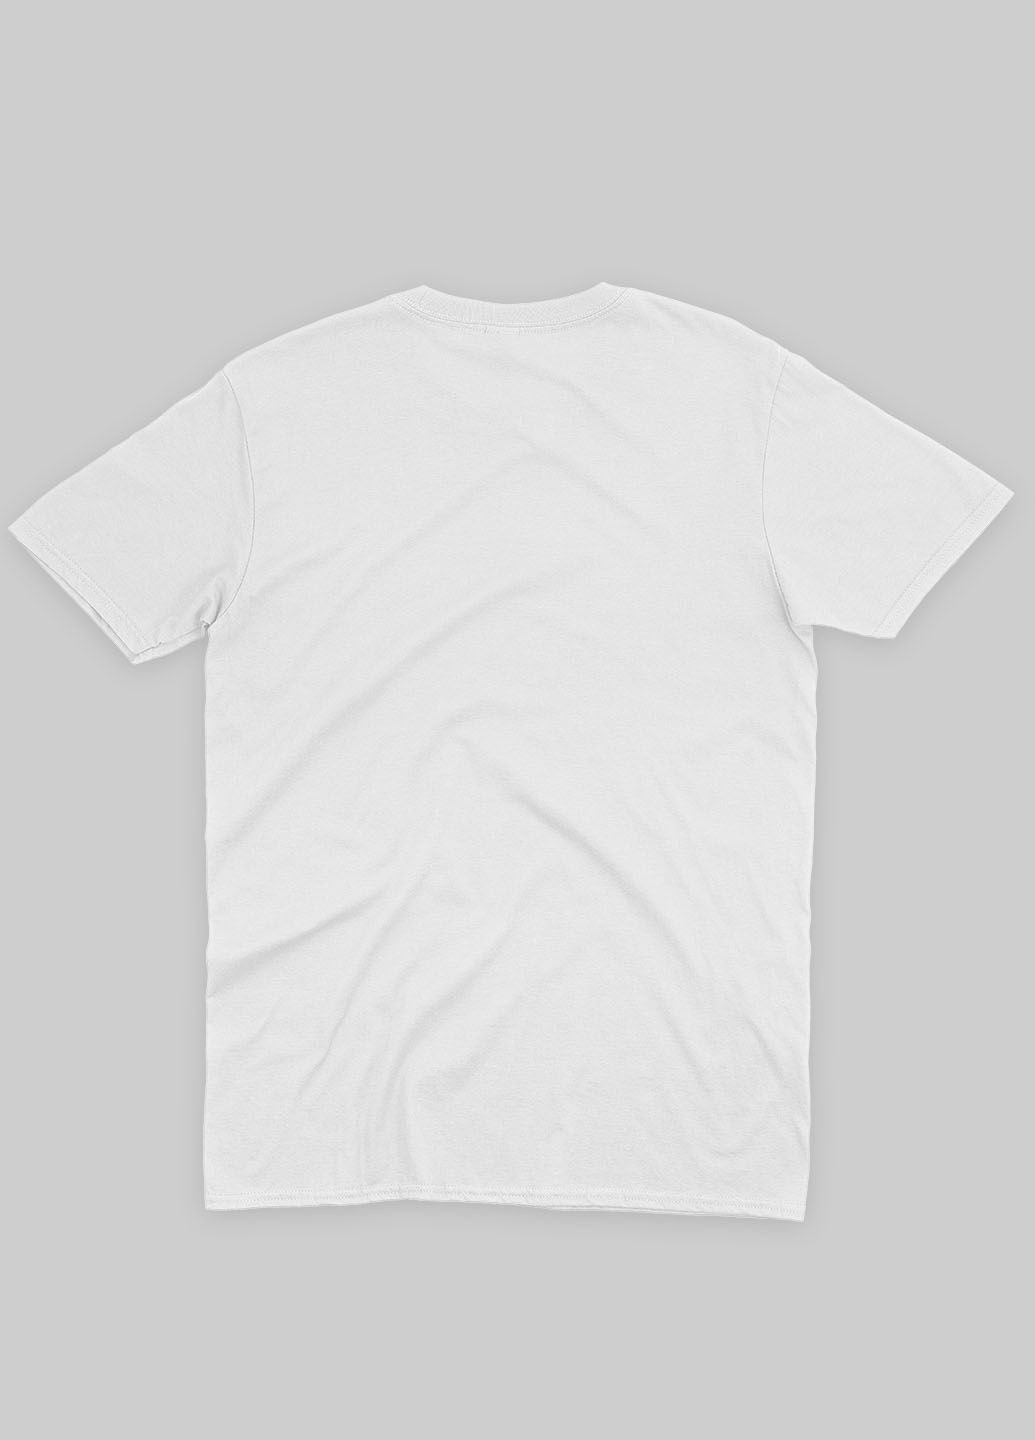 Белая демисезонная футболка для девочки с принтом супергероя - бэтмен (ts001-1-whi-006-003-006-g) Modno